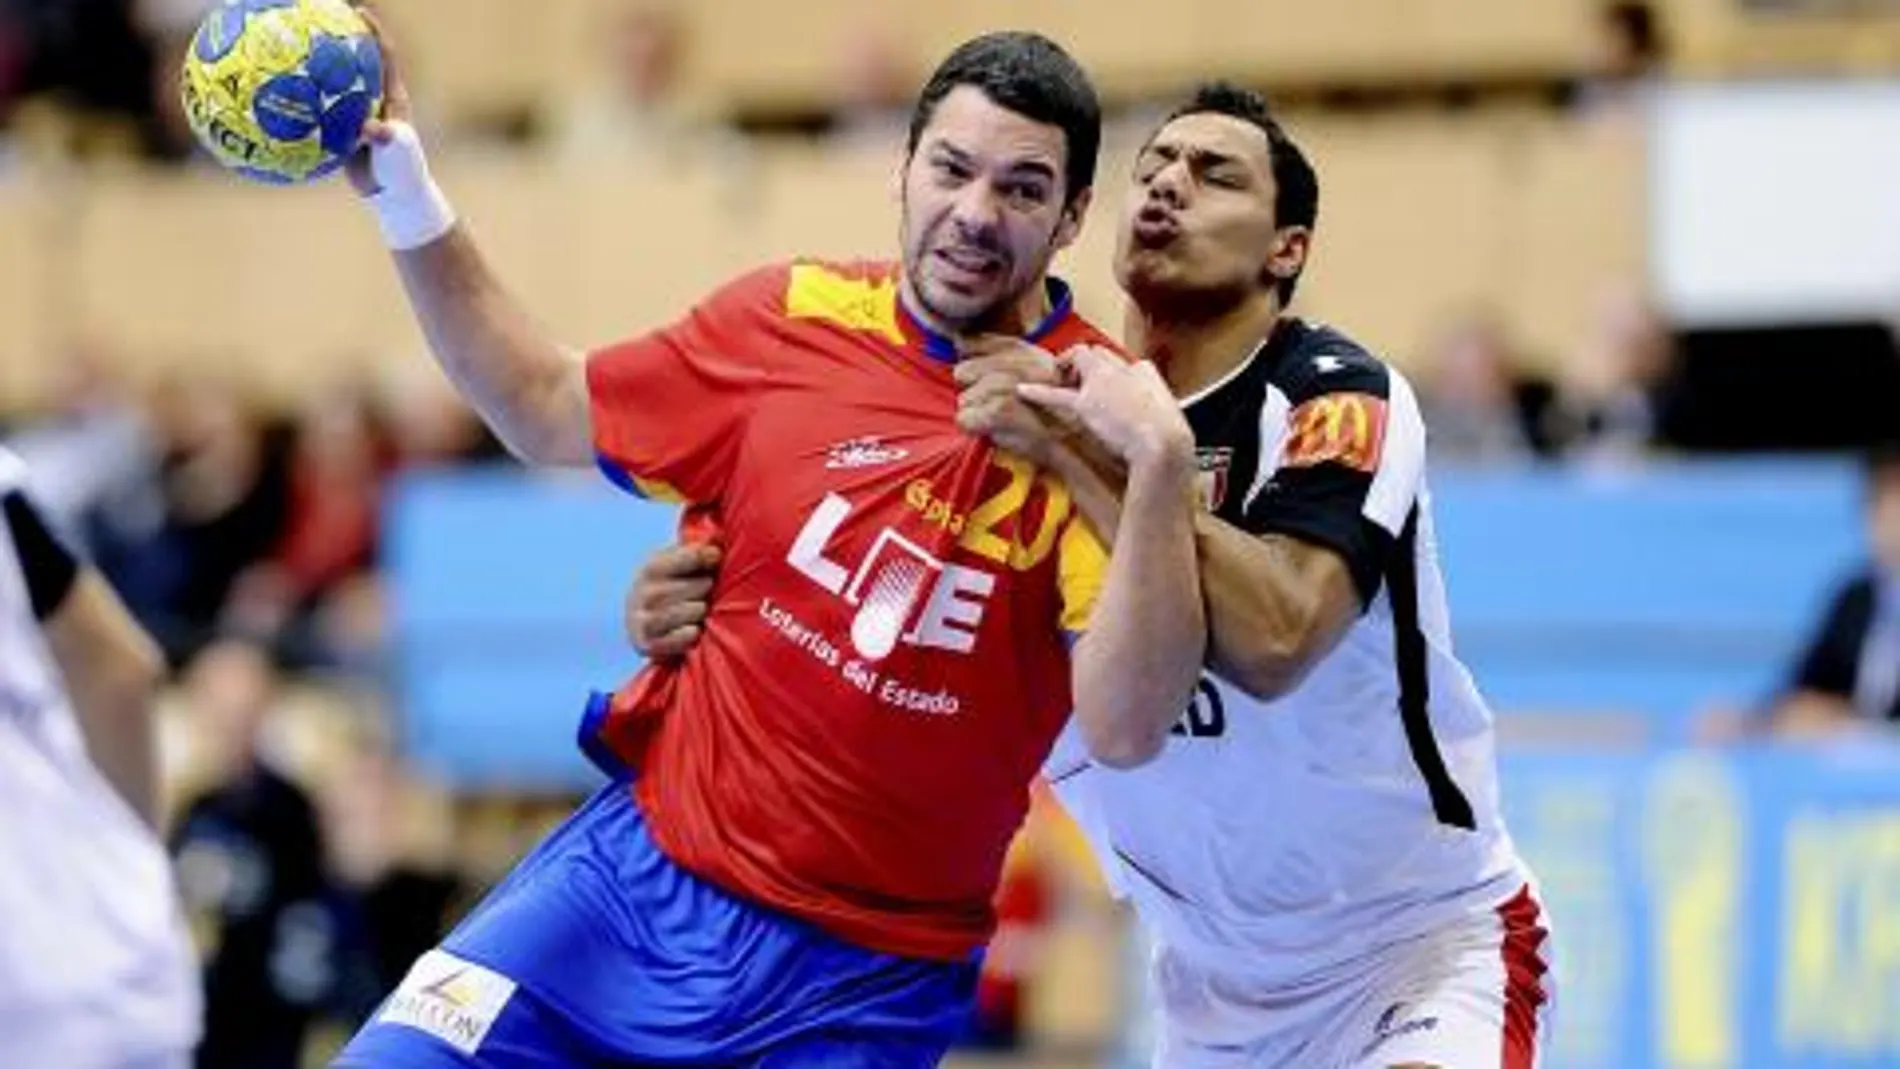 El central español José María "Chema"Rodríguez (i) intenta avanzar presionado por el egipcio Mustafa Hussein durante el partido España-Egipto, del grupo A del Mundial de balonmano de Suecia 2011